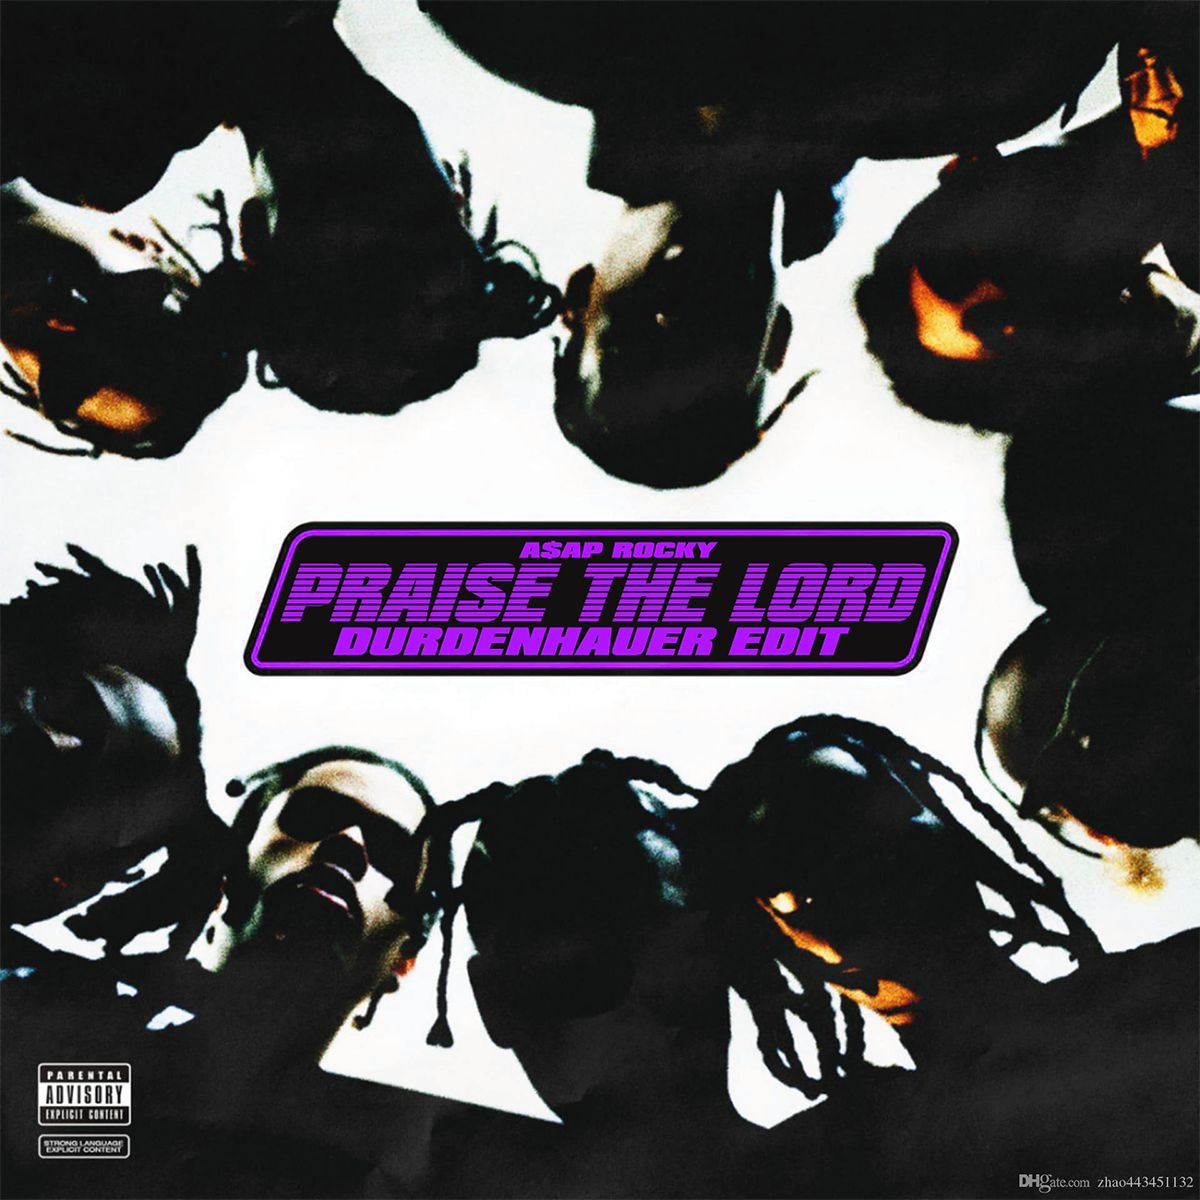 डाउनलोड A$AP ROCKY - Praise the Lord (DURDENHAUER Edit) [FREE DOWNLOAD]